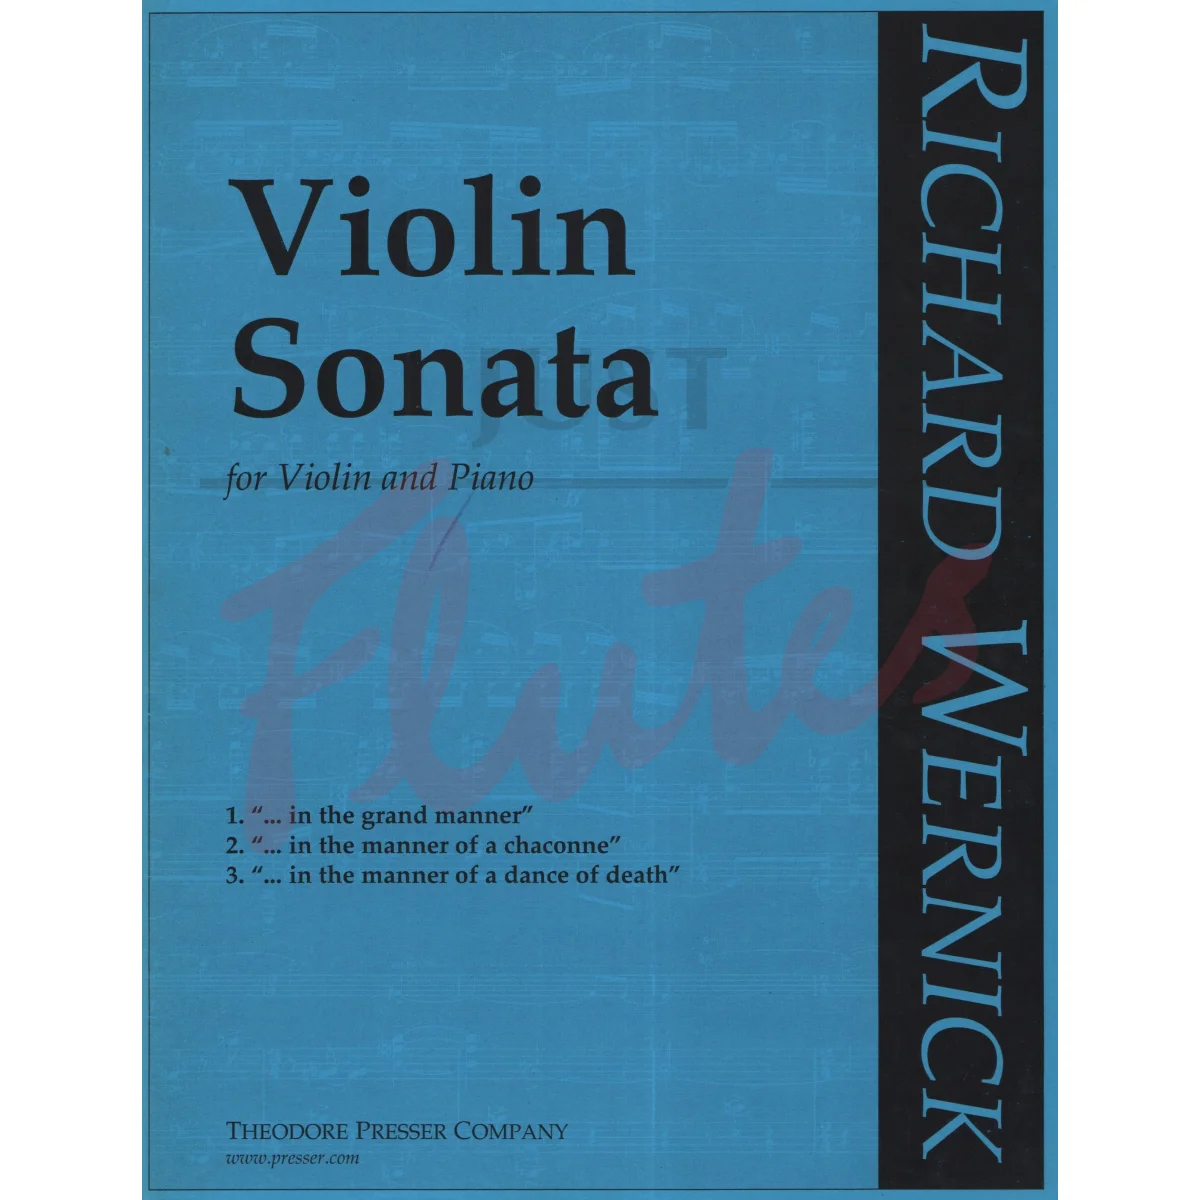 Violin Sonata for Violin and Piano